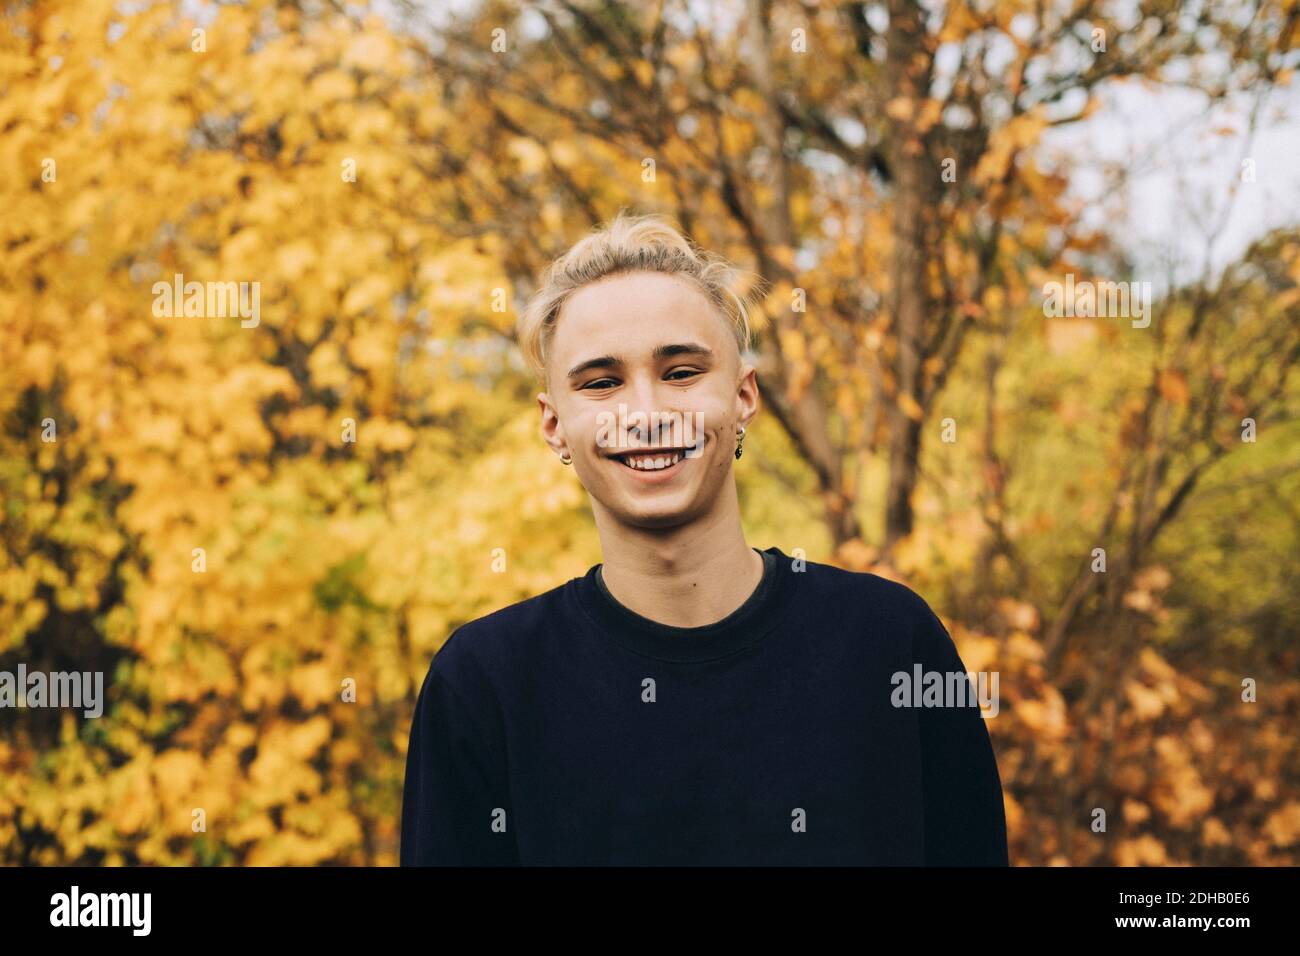 Porträt eines lächelnden Jungen im Teenageralter mit blonden Haaren, die dagegen stehen Ahornbäume Stockfoto